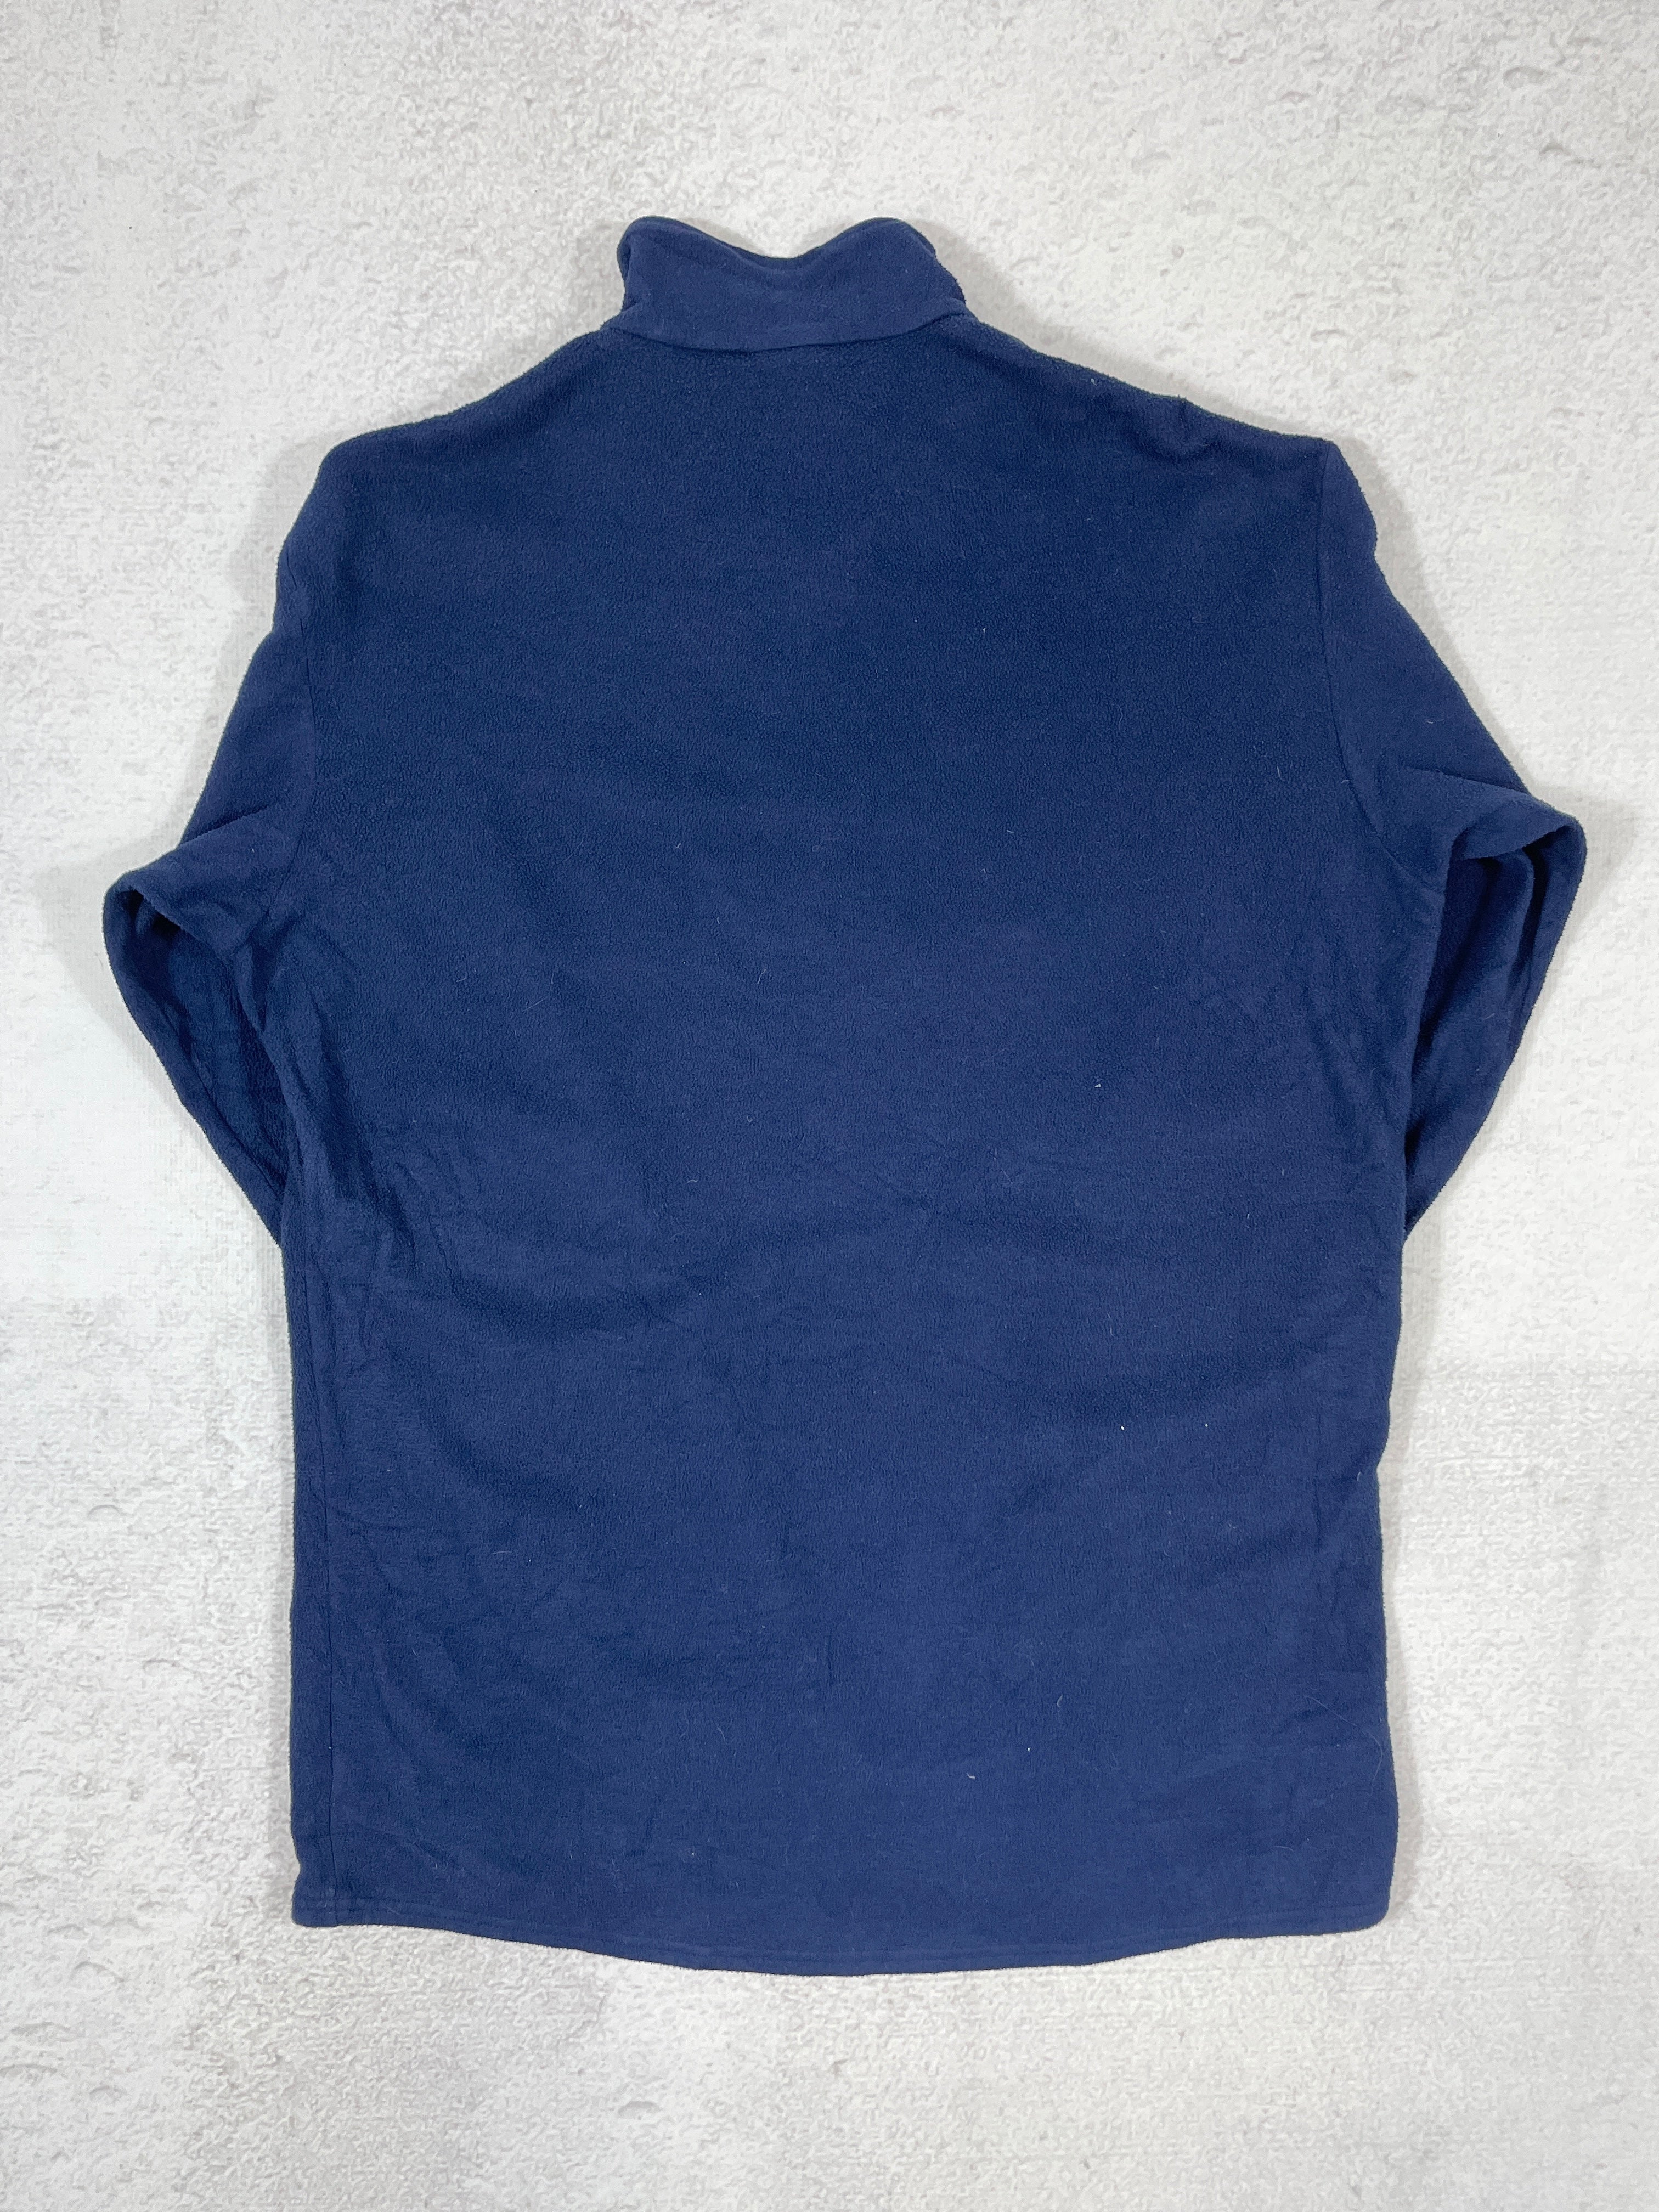 Vintage Patagonia Capilene 1/4 Zip Fleece Sweatshirt - Men's XL